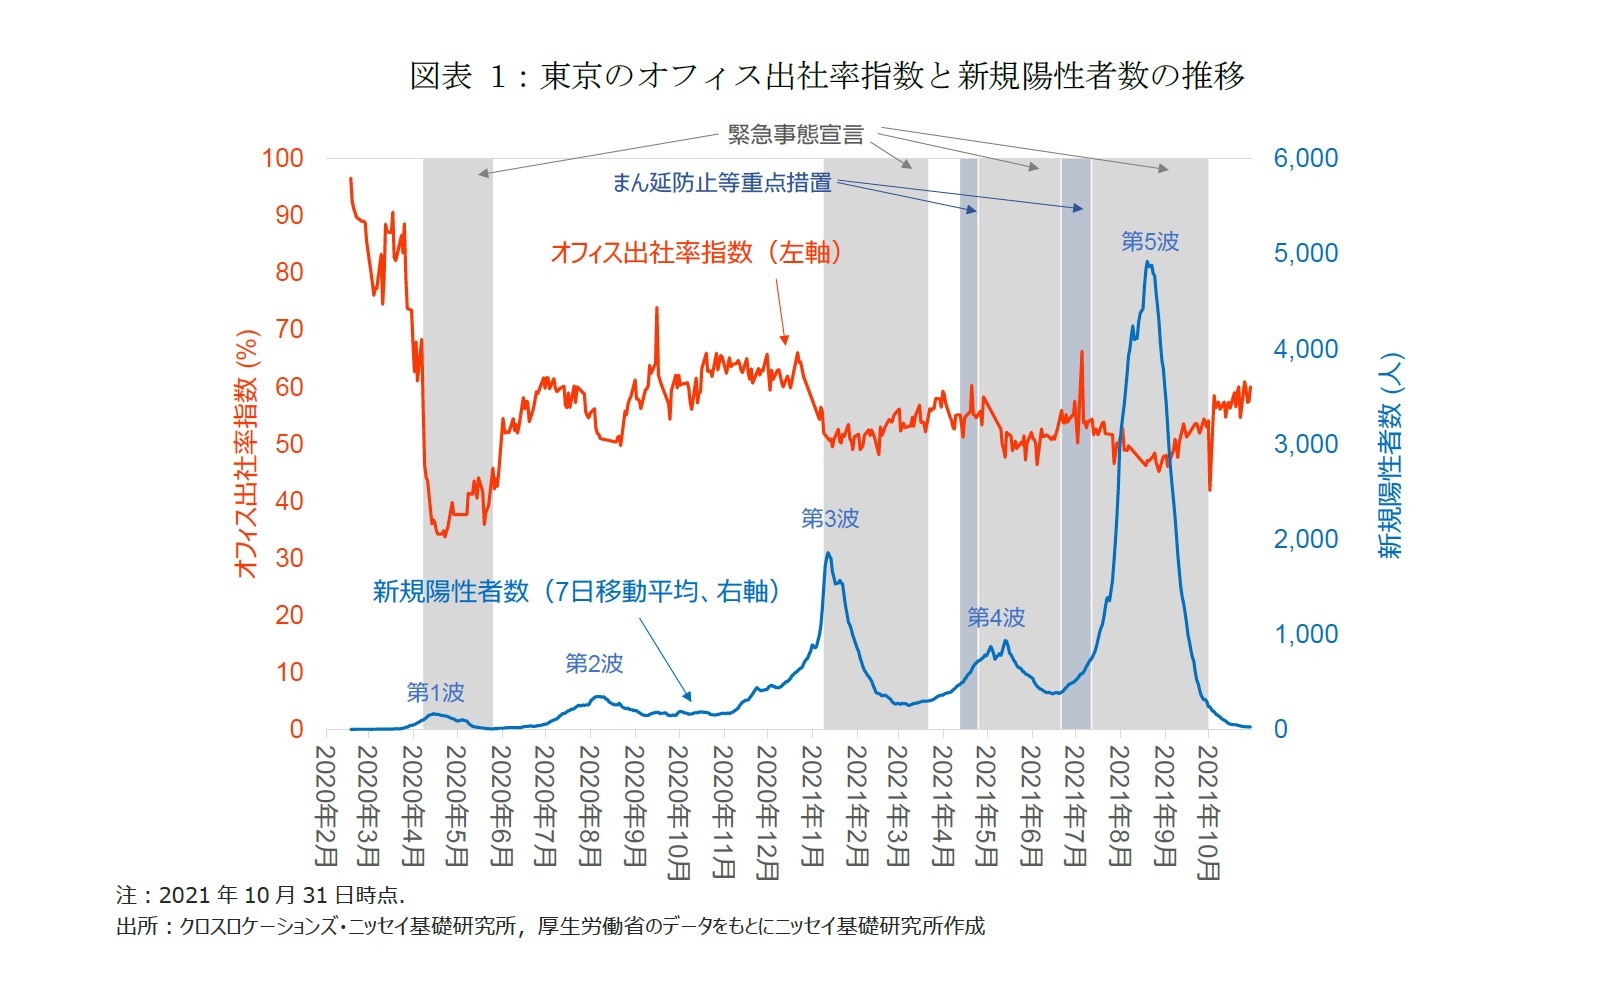 緊急事態宣言の解除後もオフィス回帰の動きは緩やか 東京のオフィス出社率指数の動向 ニッセイ基礎研究所